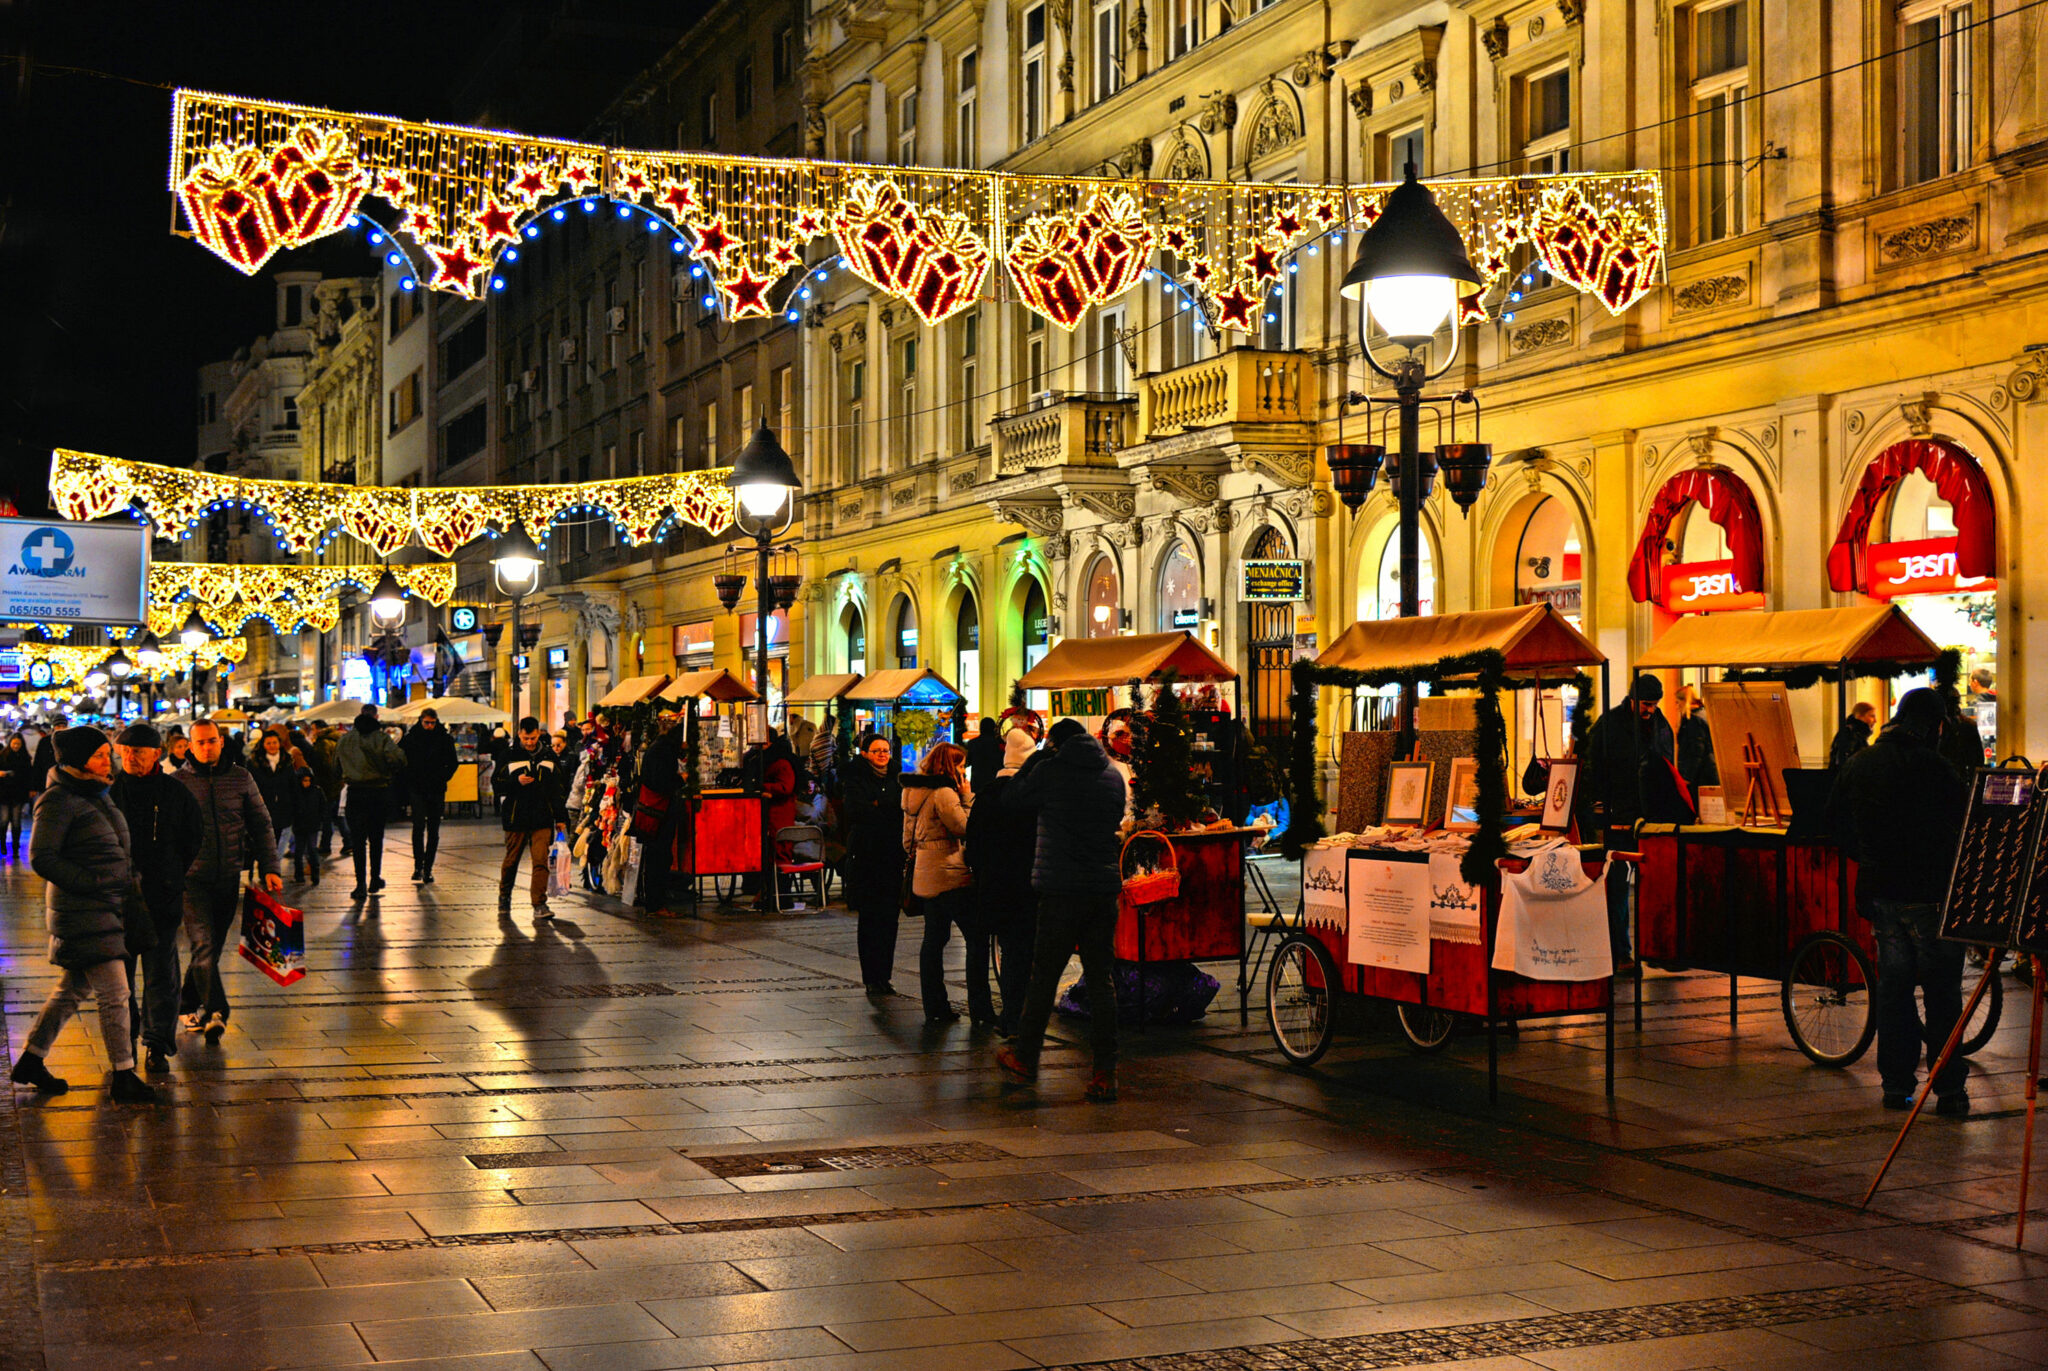 Χριστούγεννα στο Βελιγράδι – Μία πόλη γεμάτη γιορτινά φώτα, μουσική και  χαμόγελα | travel.gr